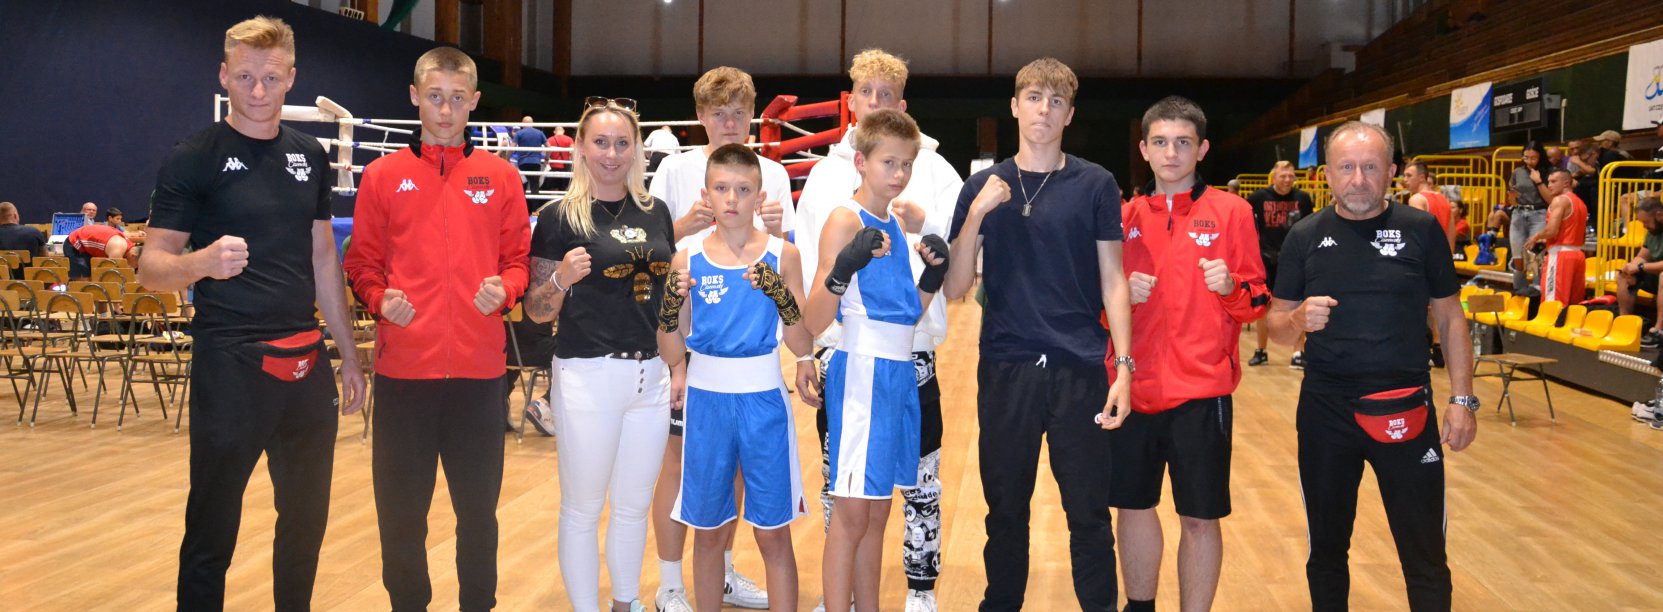 Grupa bokserów i bokserek w hali sportowej, po bokach trenerzy młodych zawodników